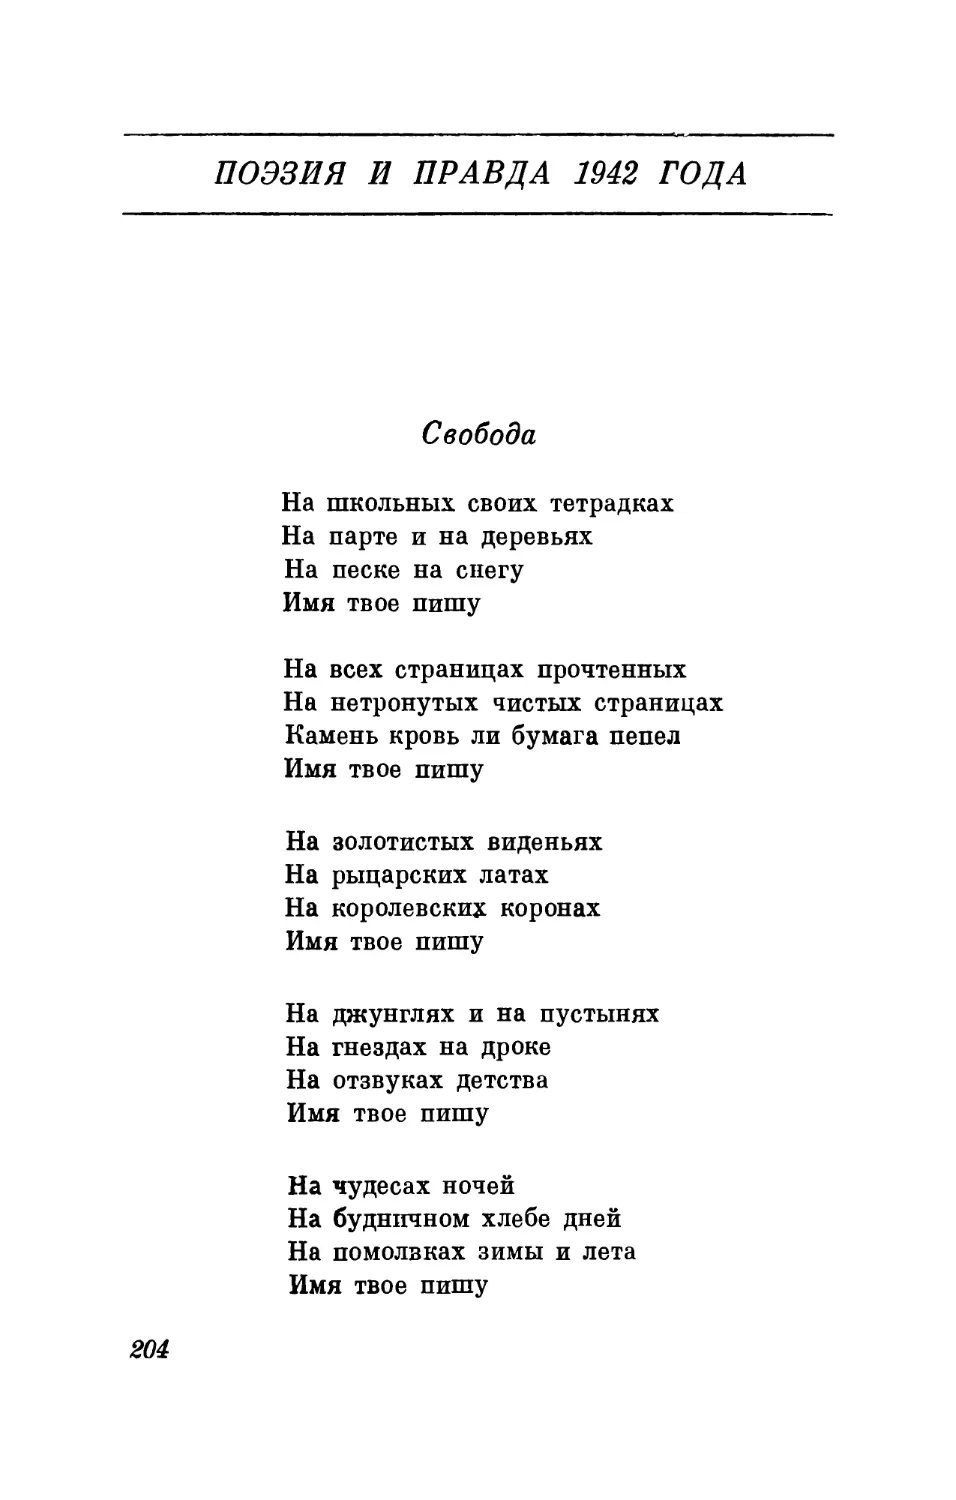 Поэзия и правда 1942 года. 1943